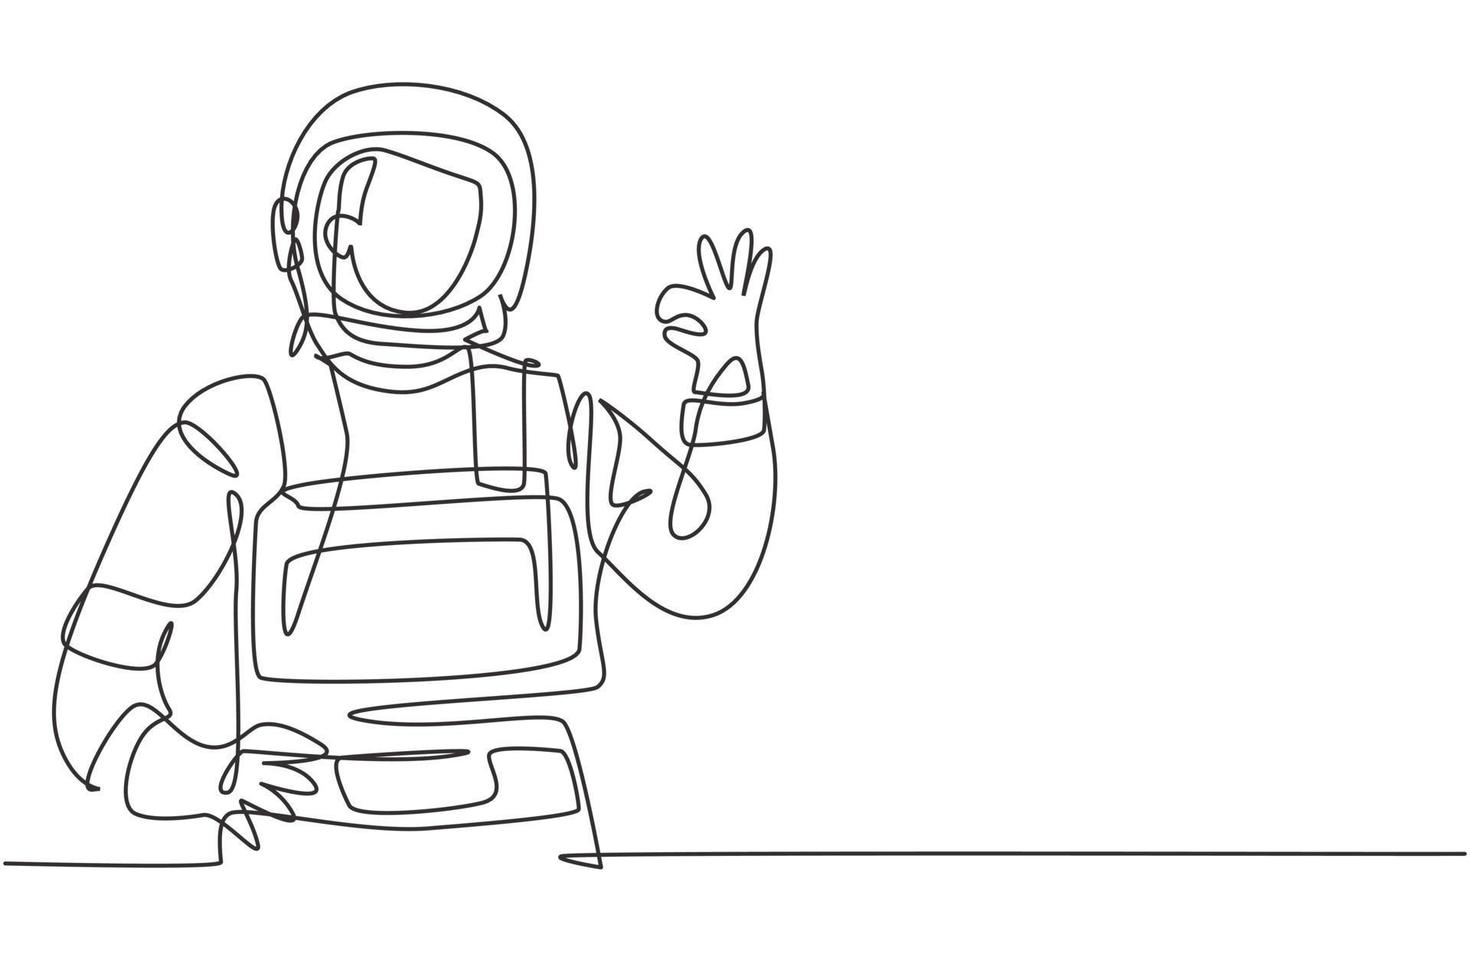 enkele lijntekening van mannelijke astronauten met gebaar oke dragen van ruimtepakken om de ruimte te verkennen op zoek naar mysteries van het universum. moderne doorlopende lijn tekenen ontwerp grafische vectorillustratie vector